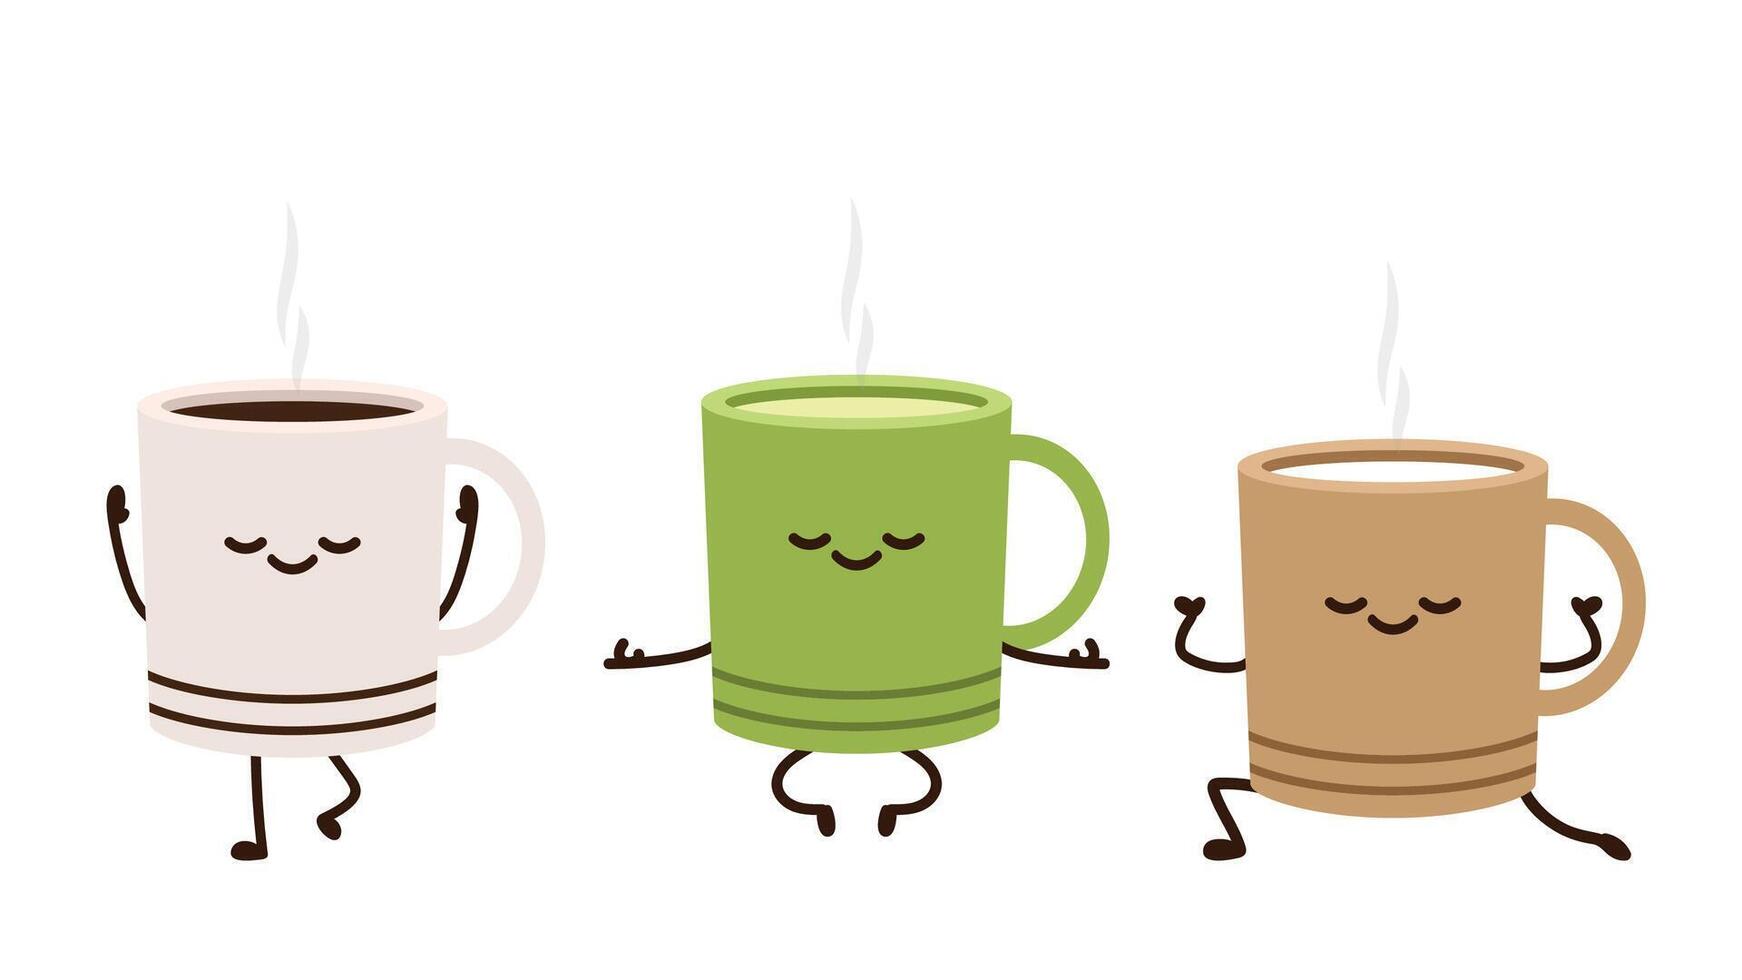 vector de taza de café. diseño del logotipo de la taza de café. taza de café con leche.